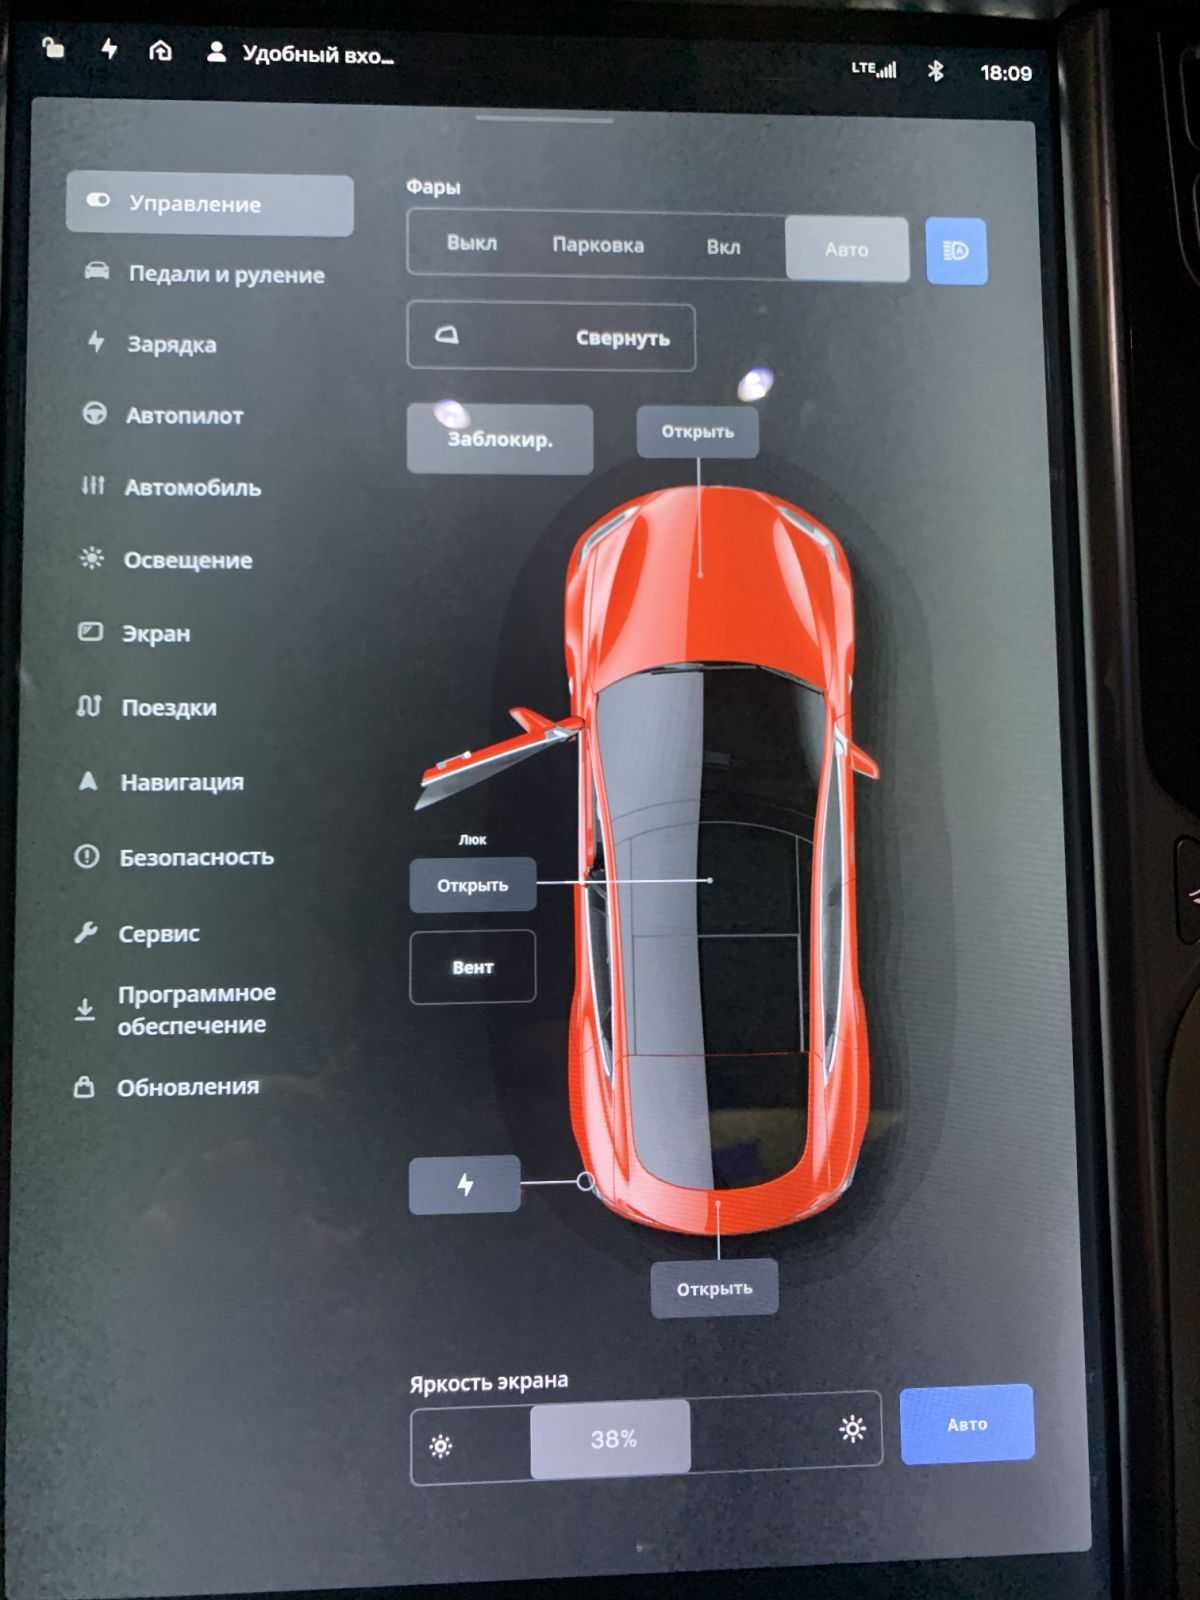 Tesla Model S 2014 г.в. (на коже с панорамой)